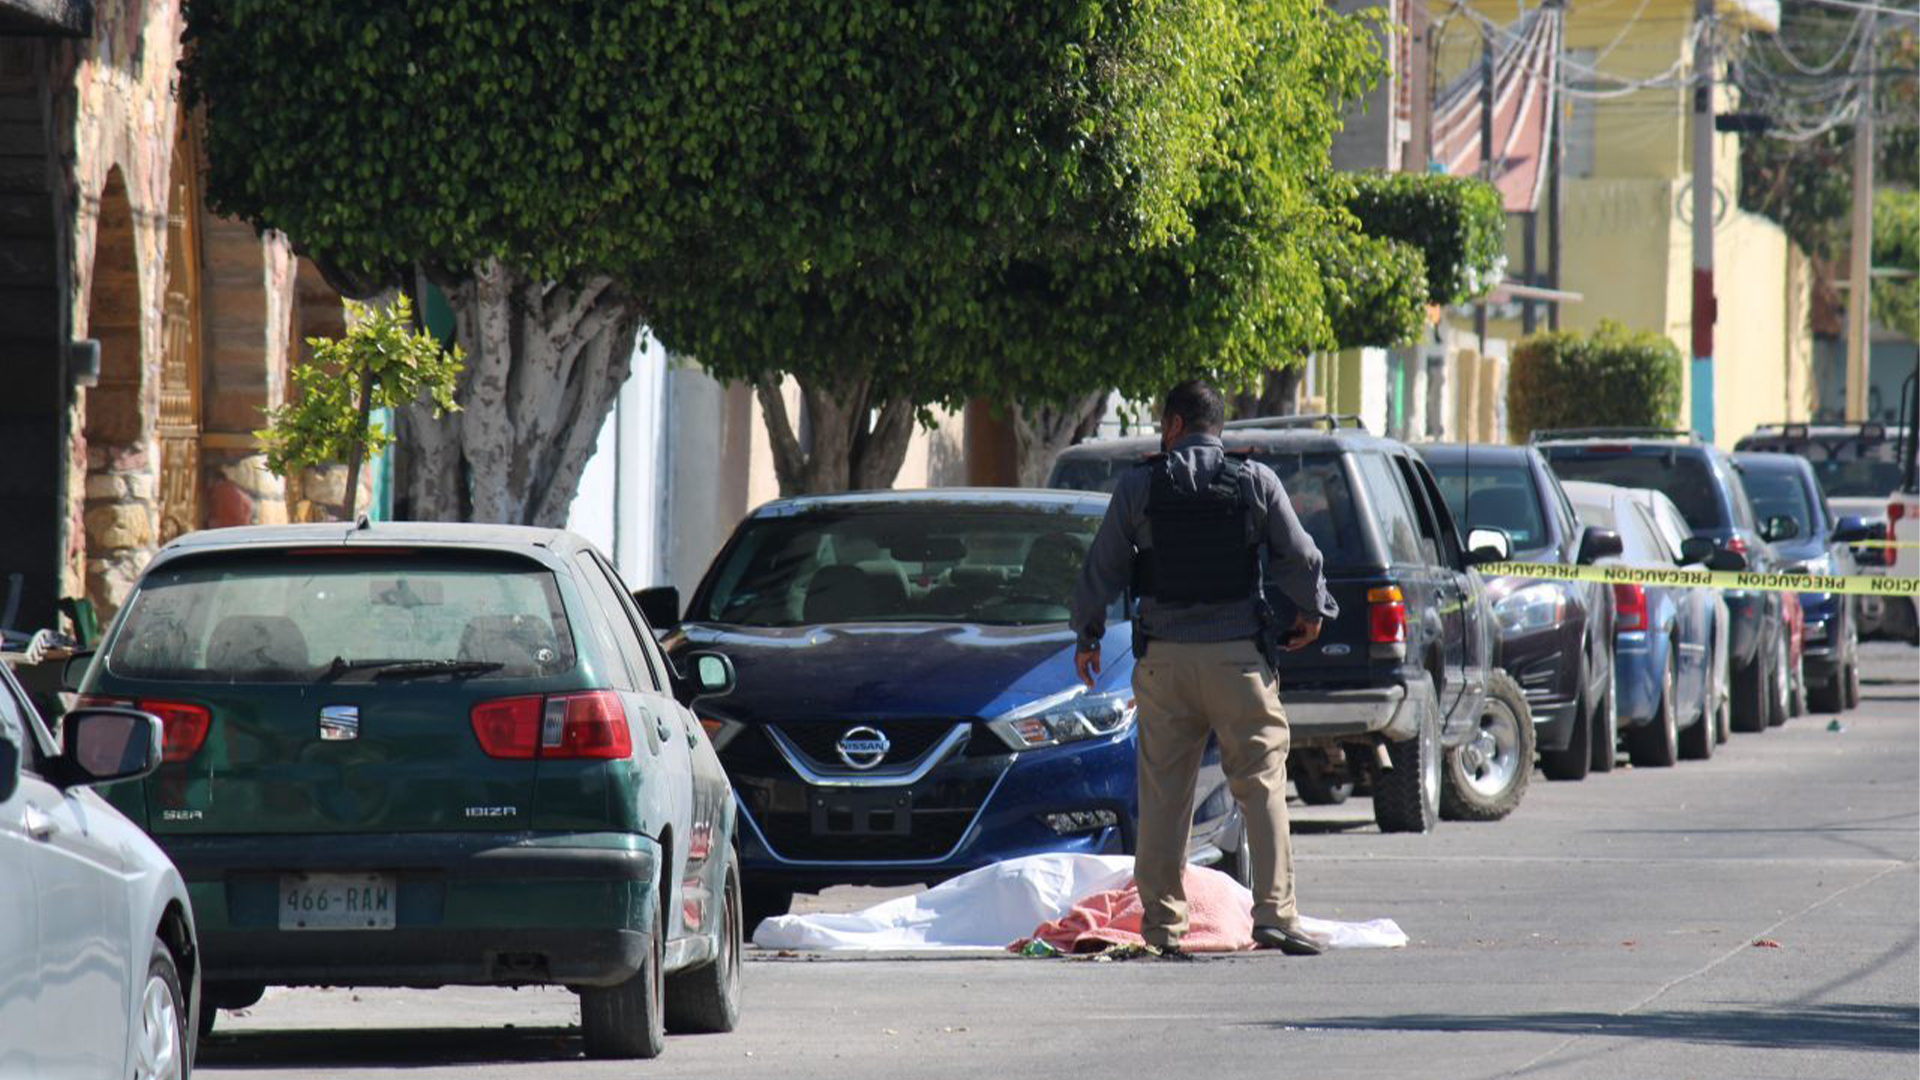 El asesinato se registró a las 09:30 horas en la calle Muñiz, colonia Lindavista, en la ciudad de Celaya, en Guanajuato (Foto: Cuartoscuro)